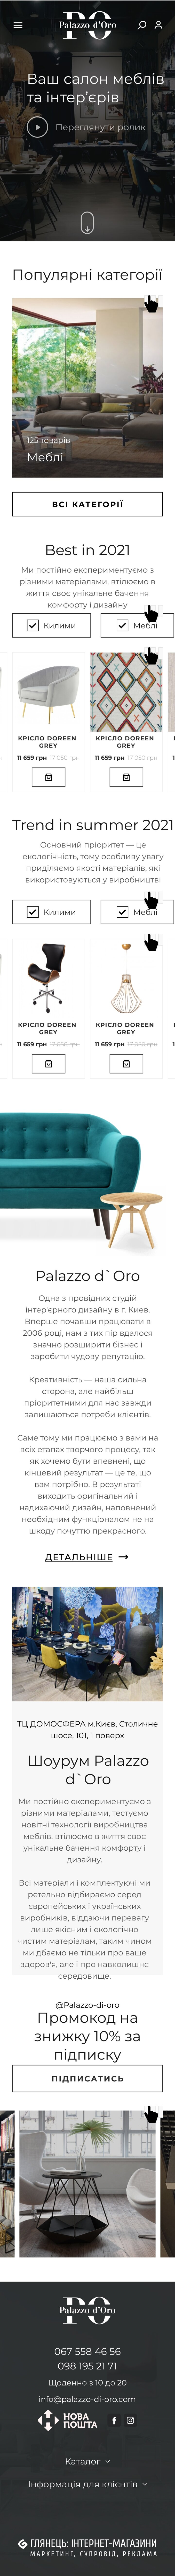 ™ Глянець, студія веб-дизайну — Інтернет-магазин Palazzo-di-oro_34